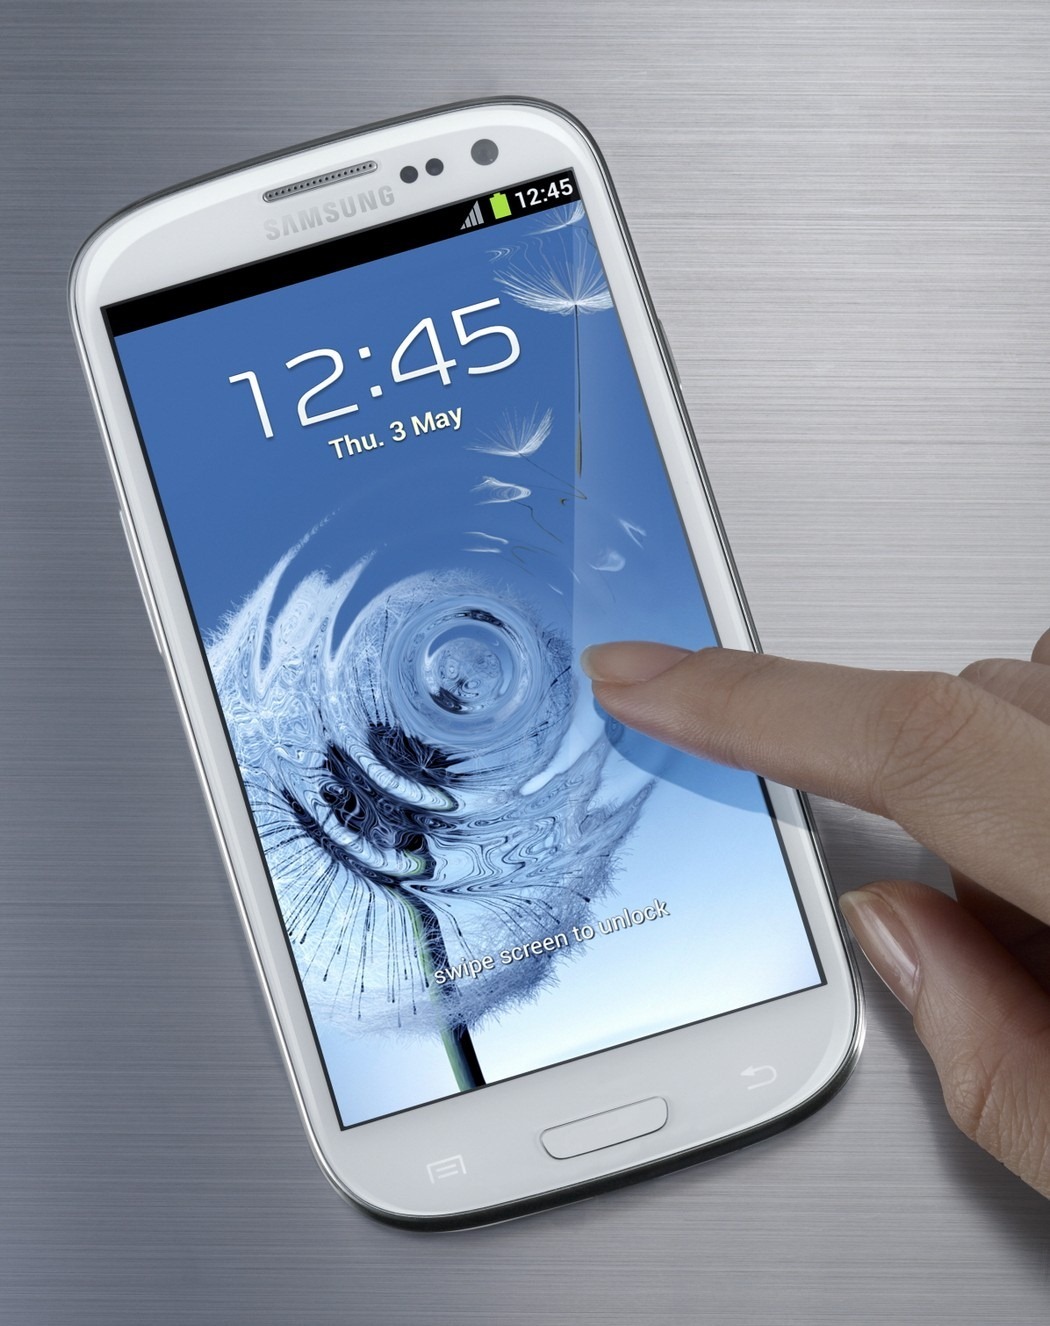 Samsung Galaxy S III SPC